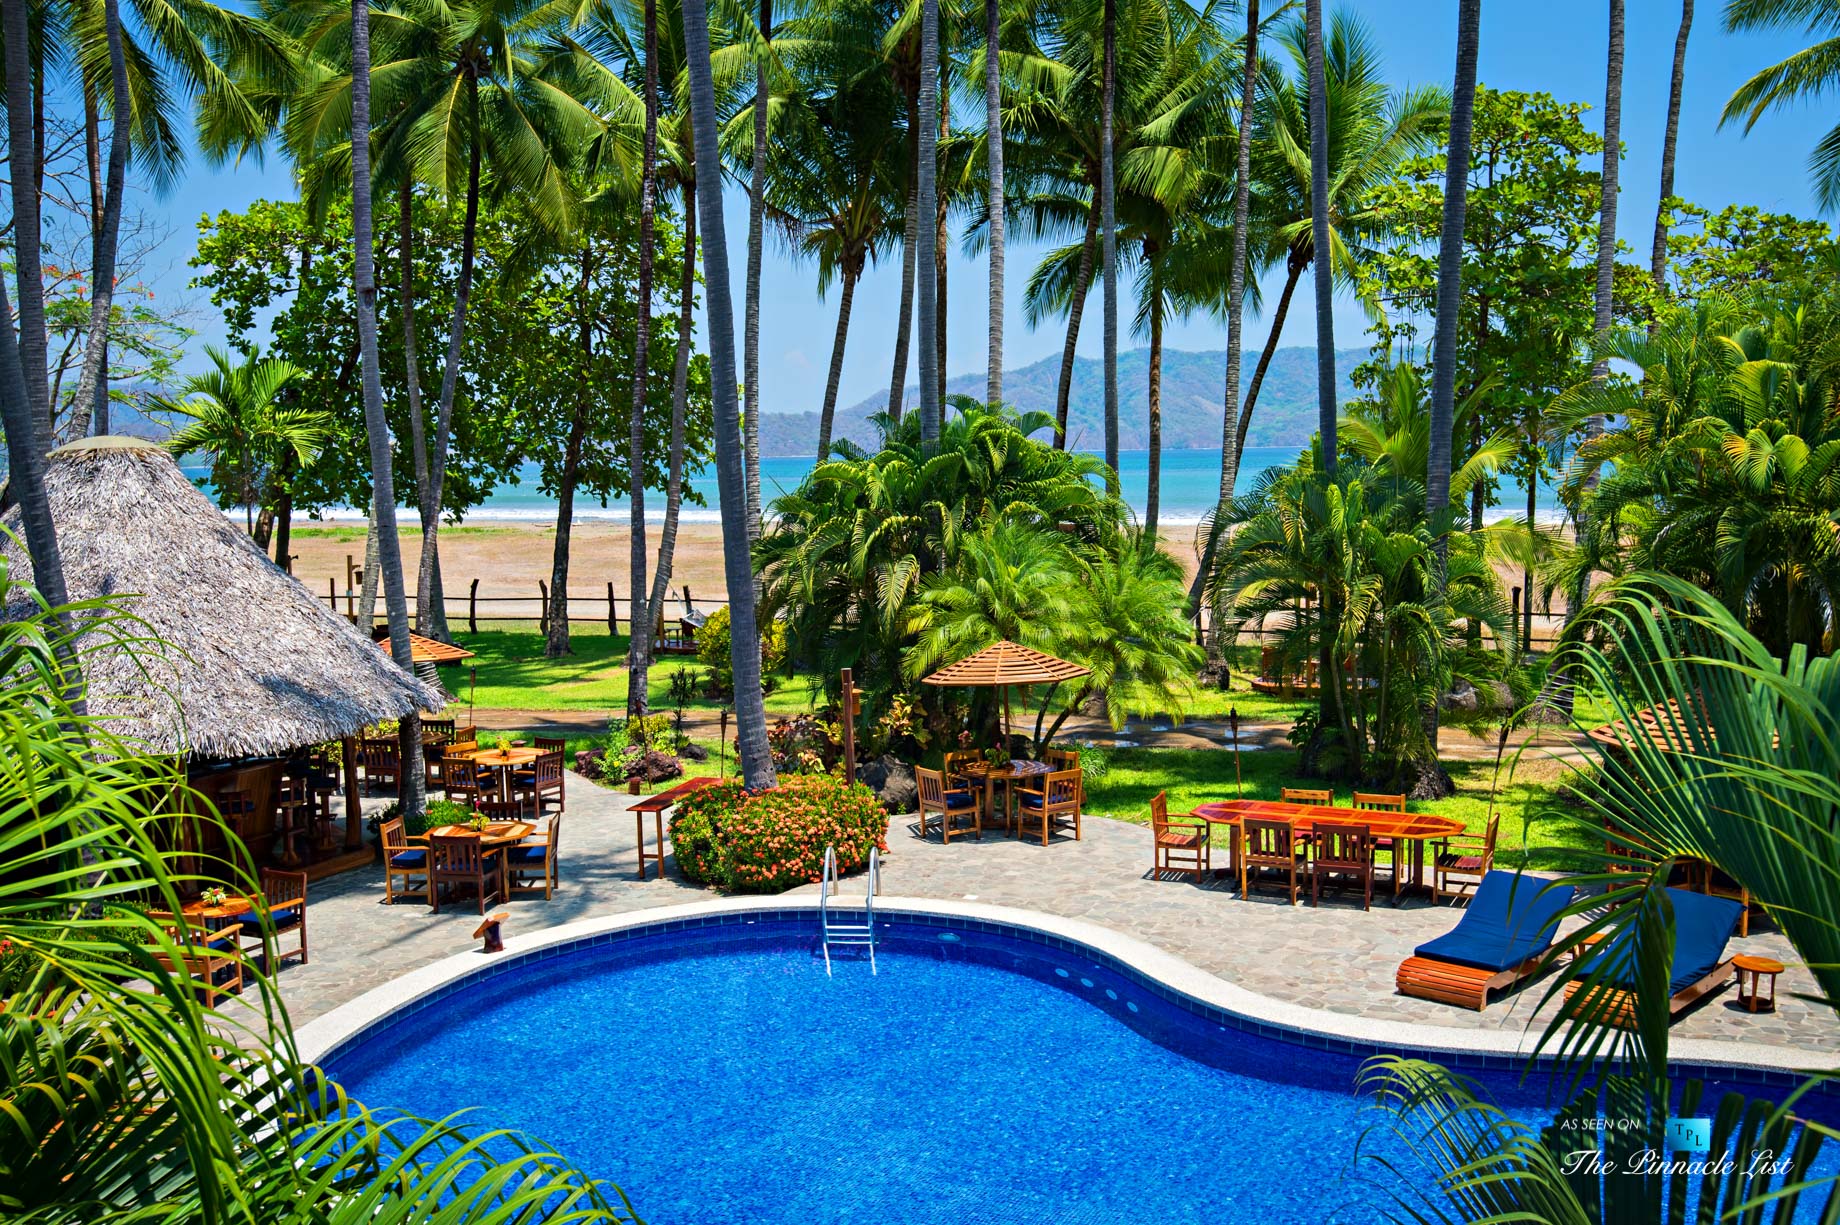 Tambor Tropical Beach Resort – Tambor, Puntarenas, Costa Rica